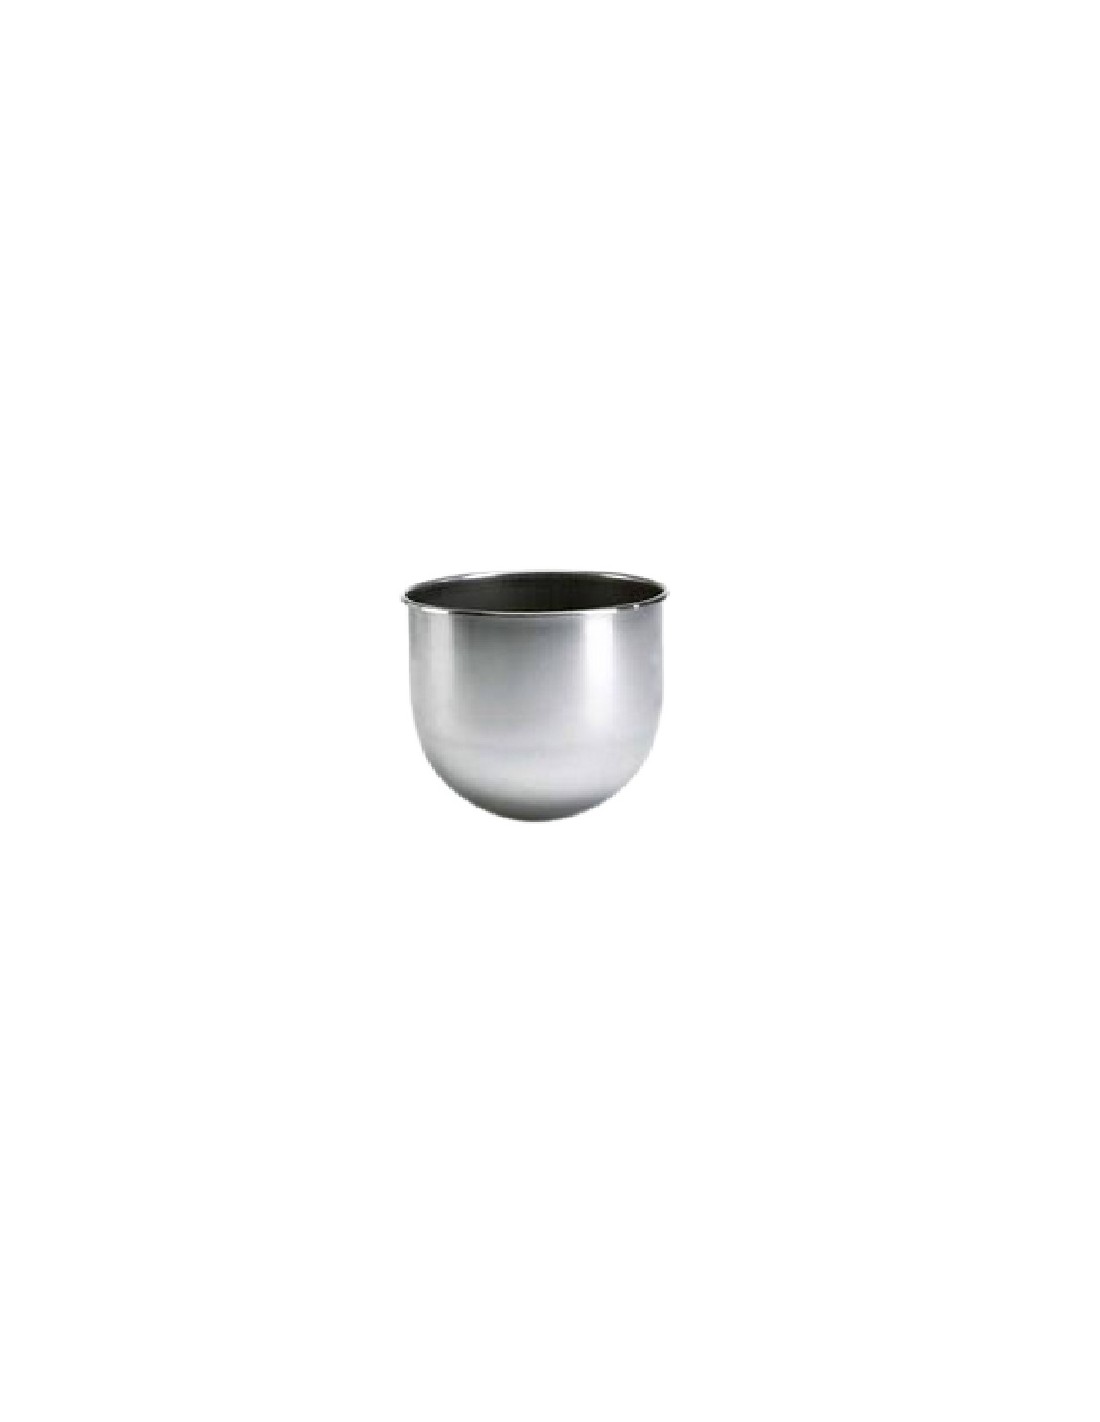 Vasca in acciaio inox - Capacità litri 6.5 ( supplementare)